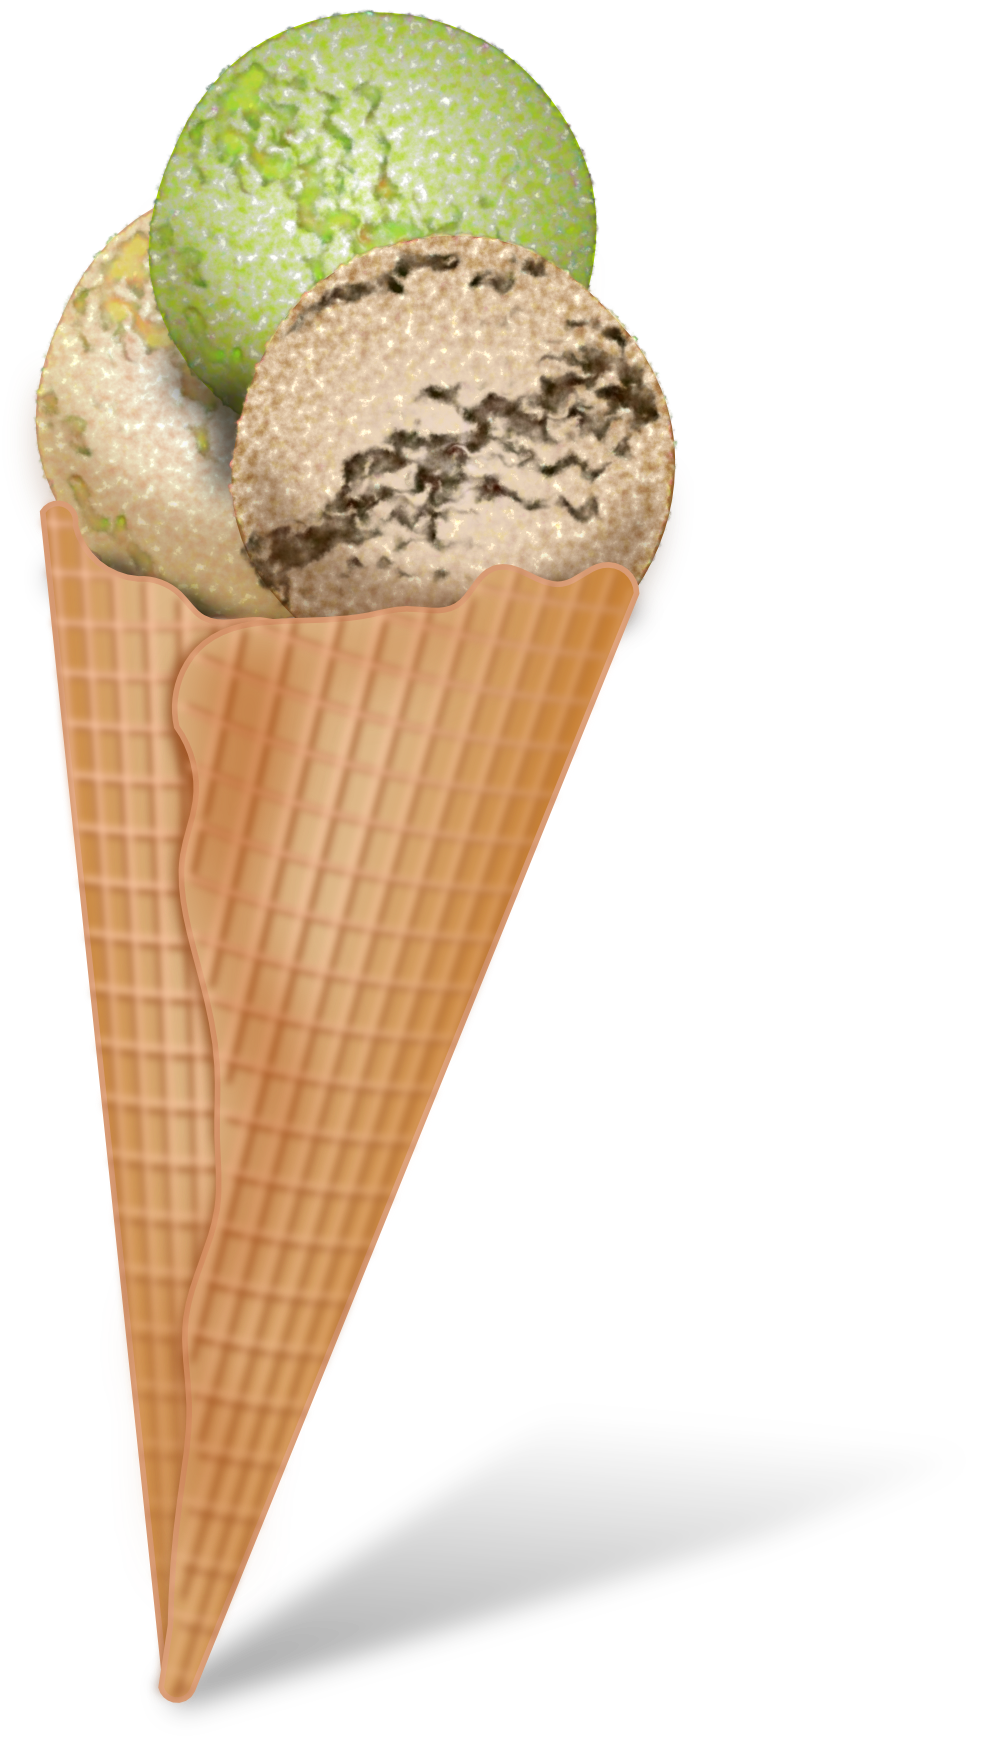 ice cream cone clip art pictures - photo #27